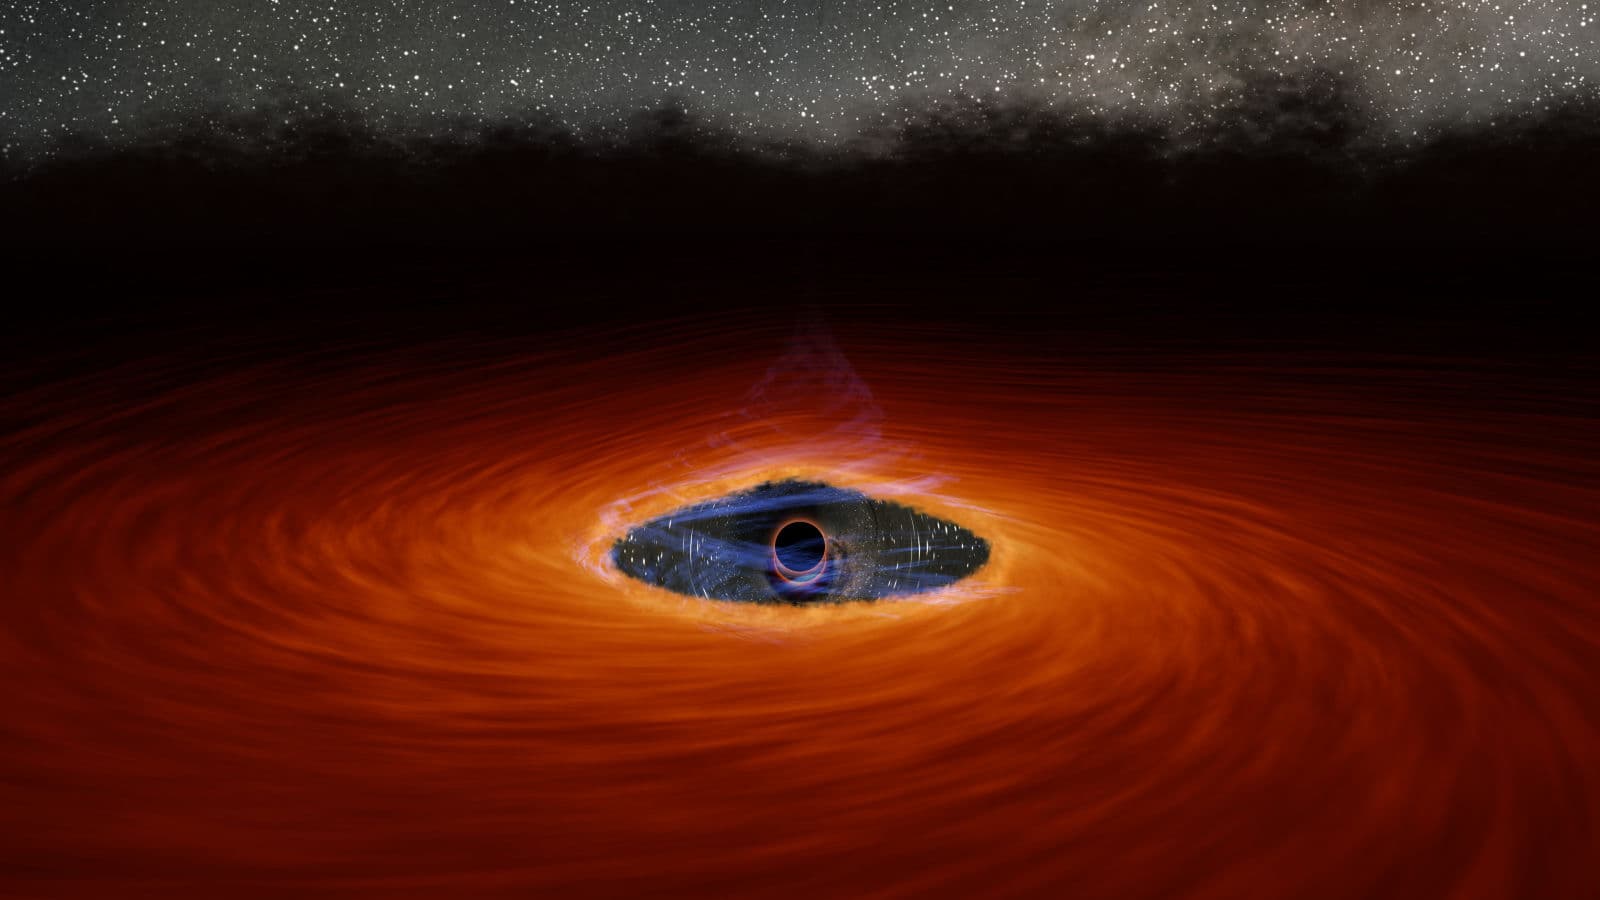 Concepção artística mostrando a corona destruída e a fenda que separa o buraco negro do disco de acreção